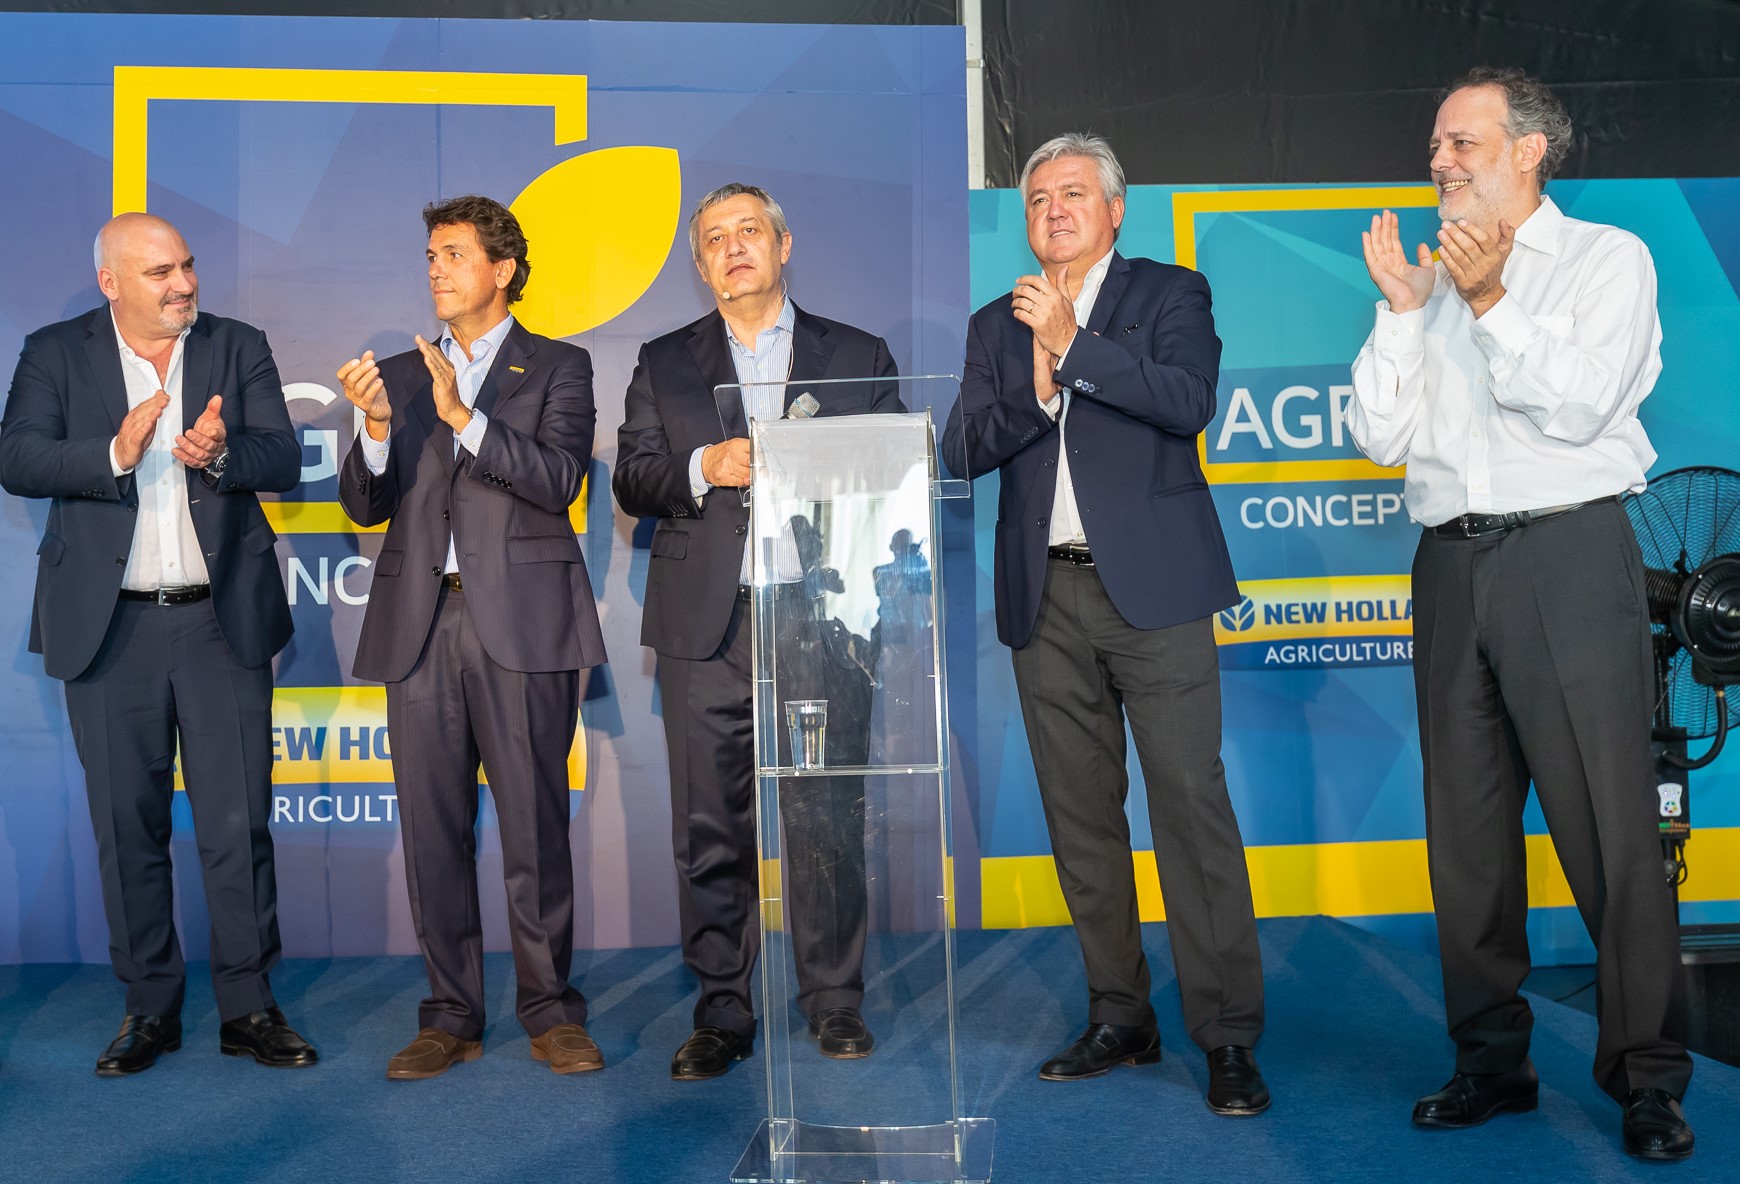 Carlo Lambro, Președintele mărcii New Holland, confirmă evoluția AgroConcept pe piață de profil și anunță noua gamă de utilaje New Holland Light Equipment 